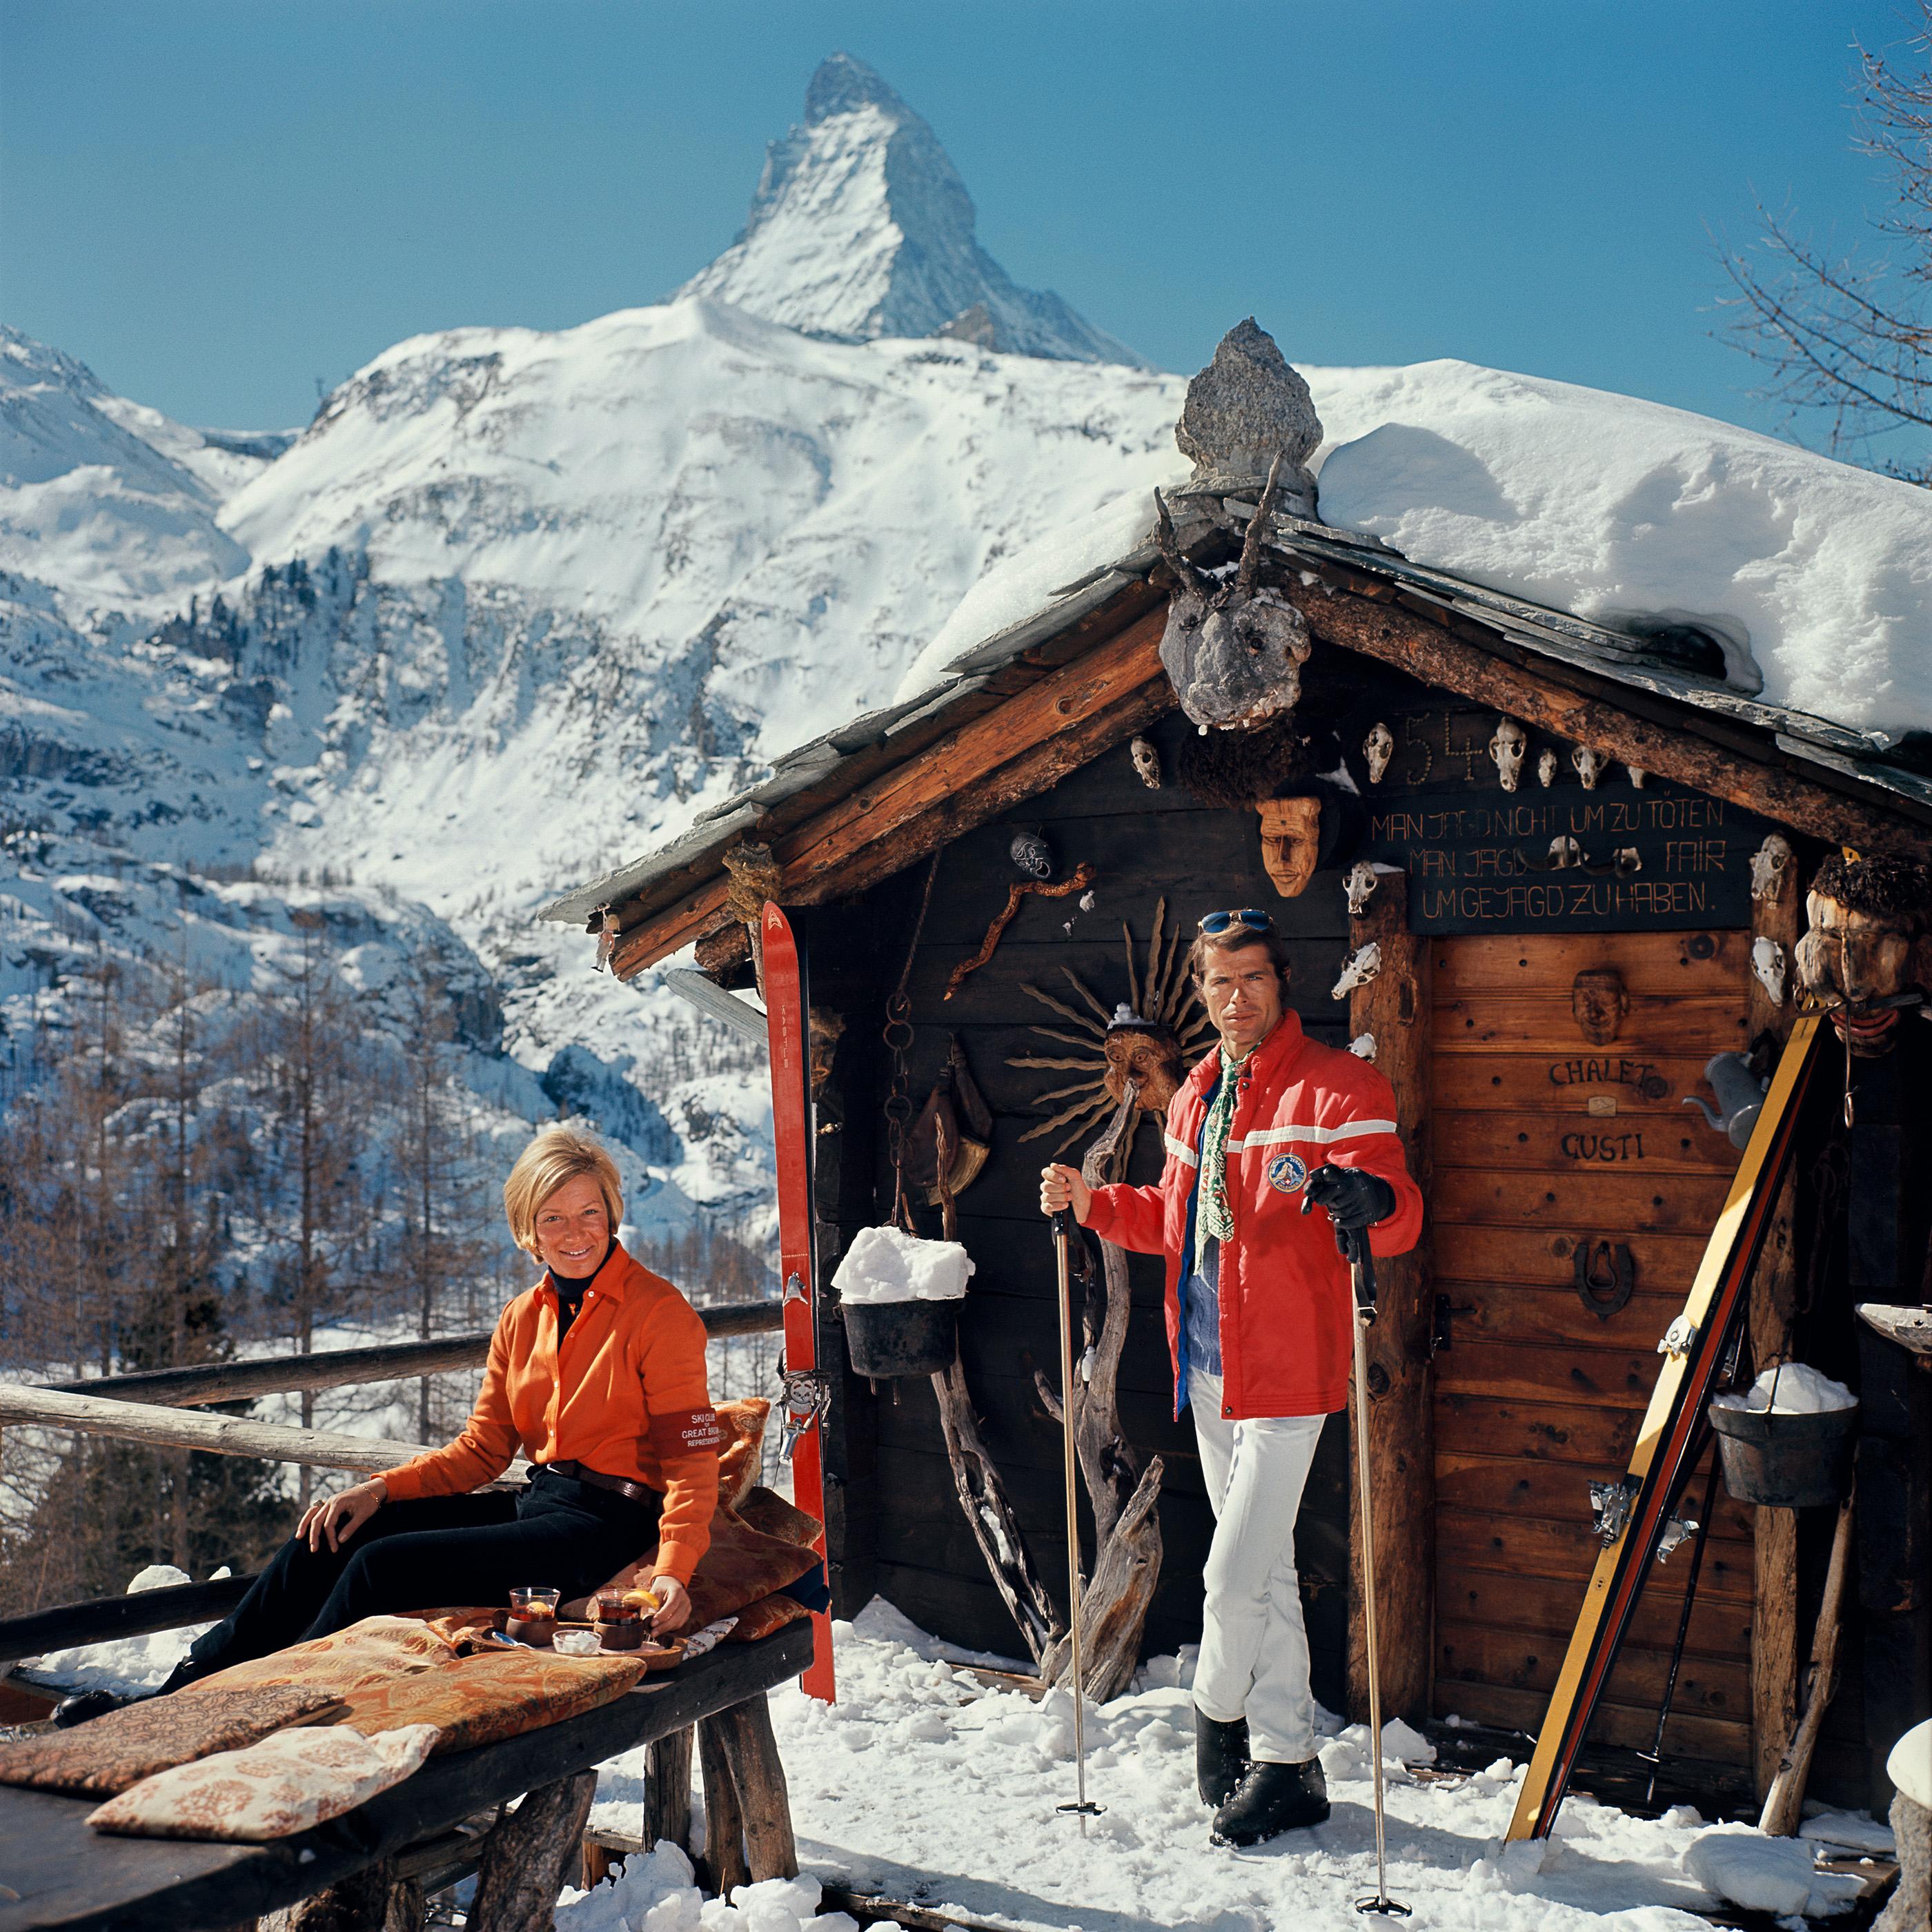 Color Photograph Slim Aarons - Édition de succession Chalet Costi, Zermatt, Suisse